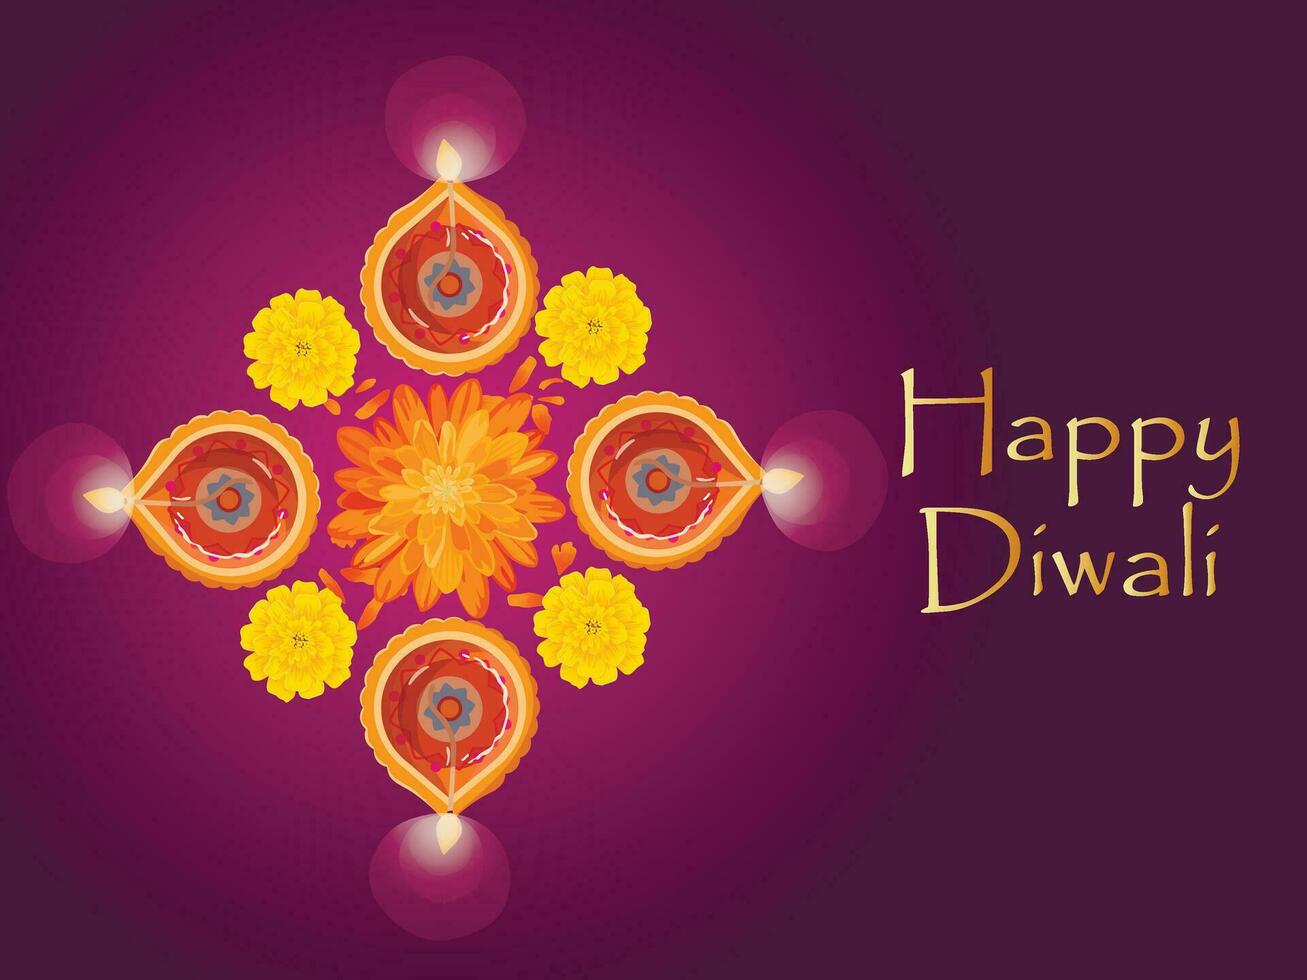 groet kaart gelukkig diwali Indisch festival van lichten met diya - traditioneel olie lamp en bloemen vector